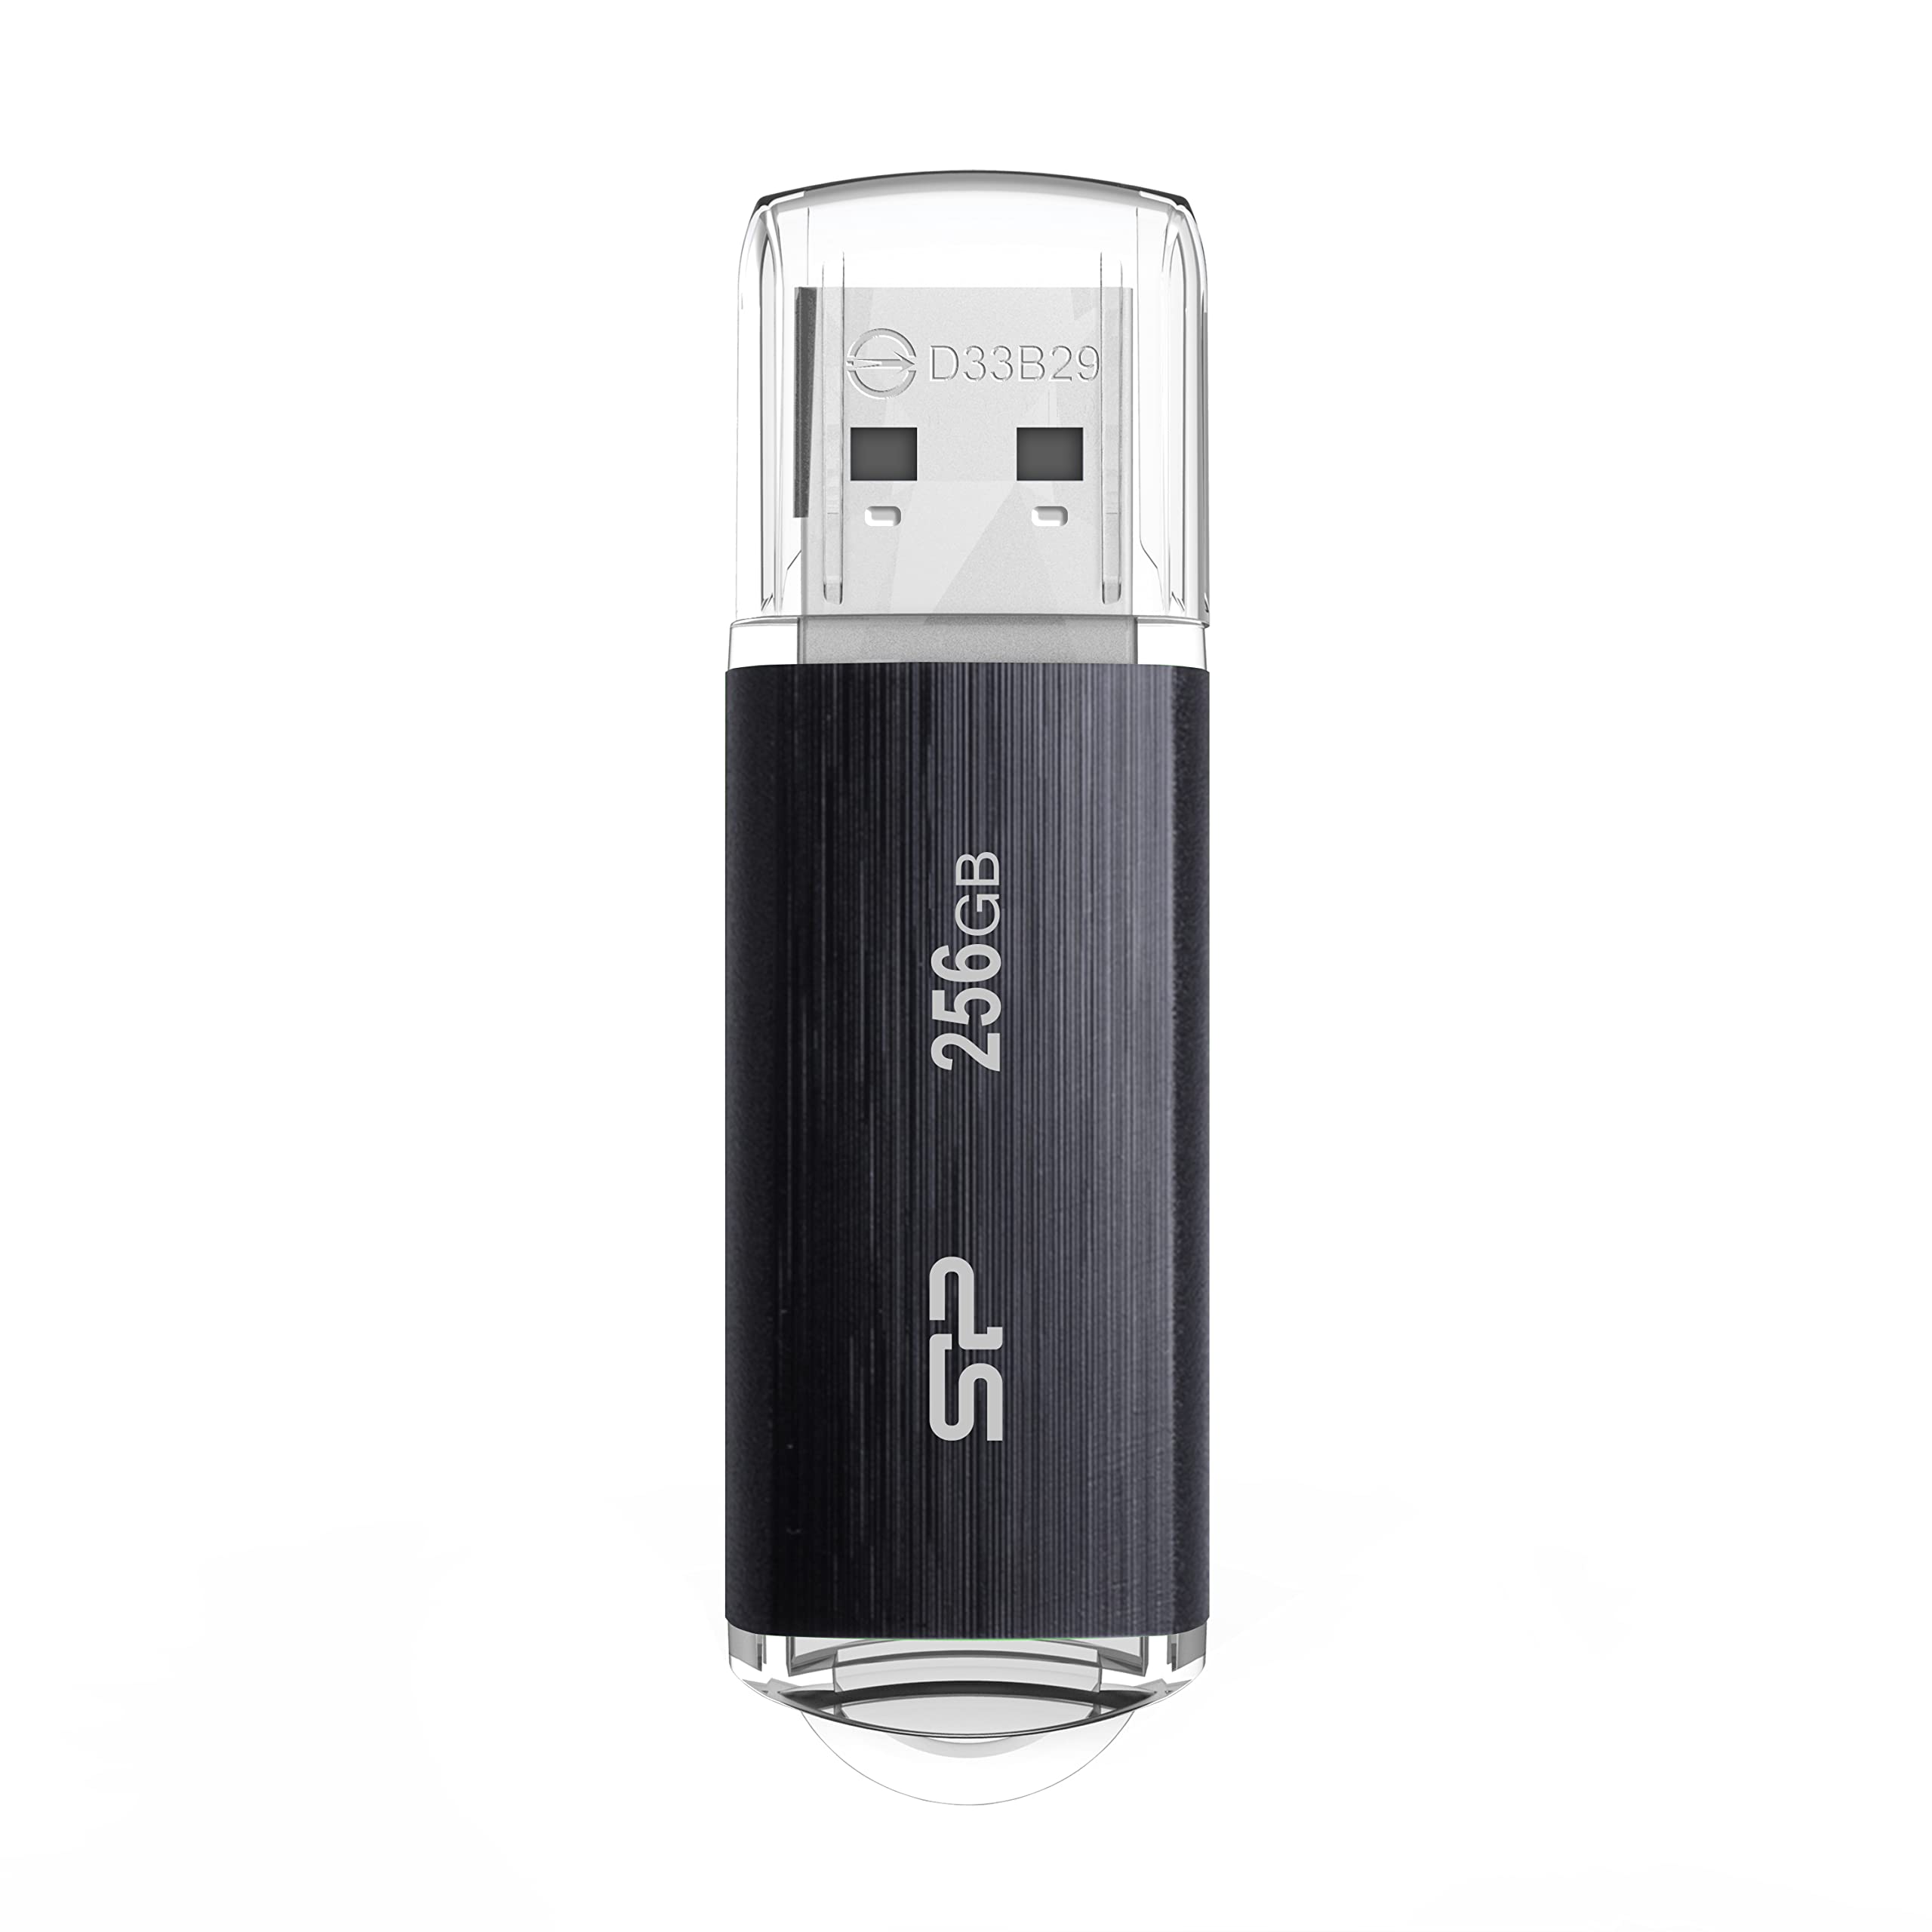 シリコンパワー USBメモリ 256GB 30本パック USB3.2 Gen1 (USB3.1 Gen1 / USB3.0) フラッシュドライブ ..